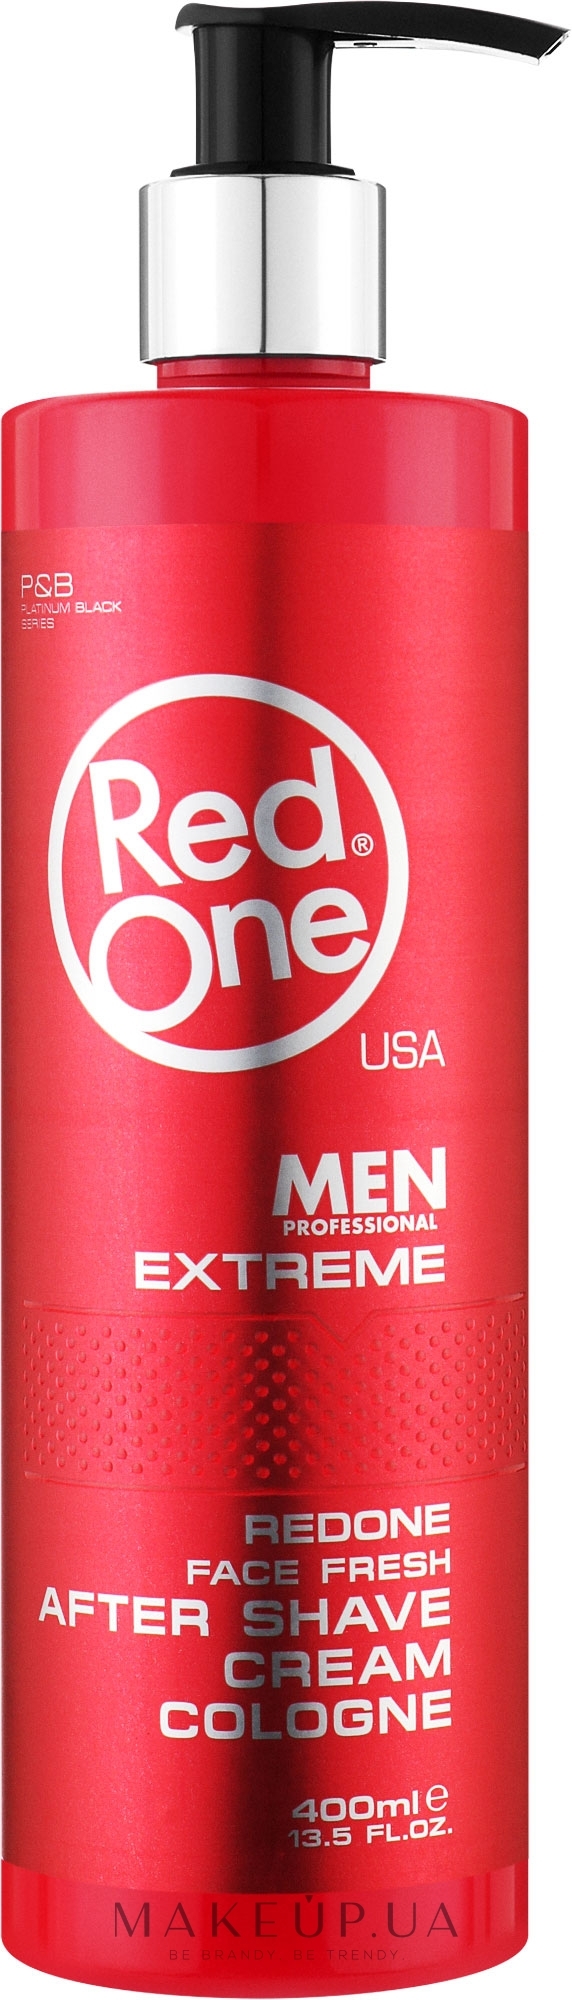 Парфюмированный крем после бритья - RedOne Aftershave Cream Cologne Extreme — фото 400ml